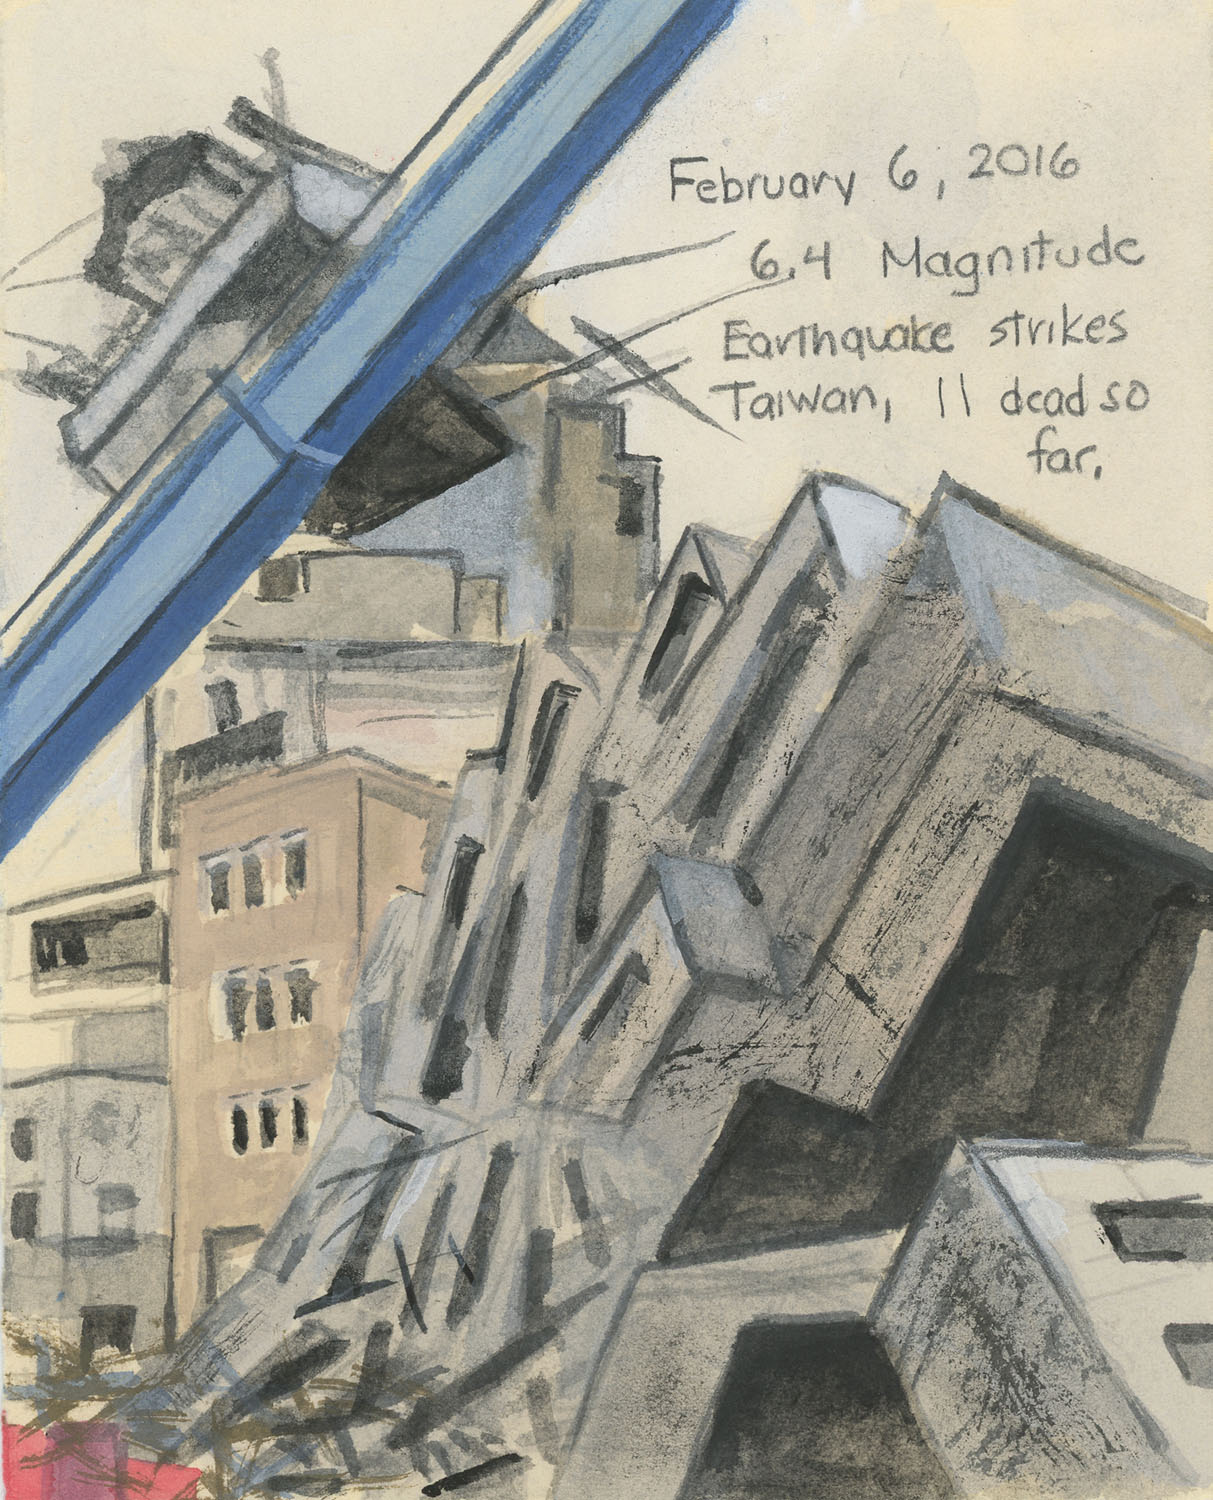 Day 77 (Feb. 6, 2016)<br>Watercolor, gouache, graphite on paper, 7 ½ x 6 in.<br><i>6.4 Magnitude Earthquake strikes Taiwan, 11 dead so far.</i>